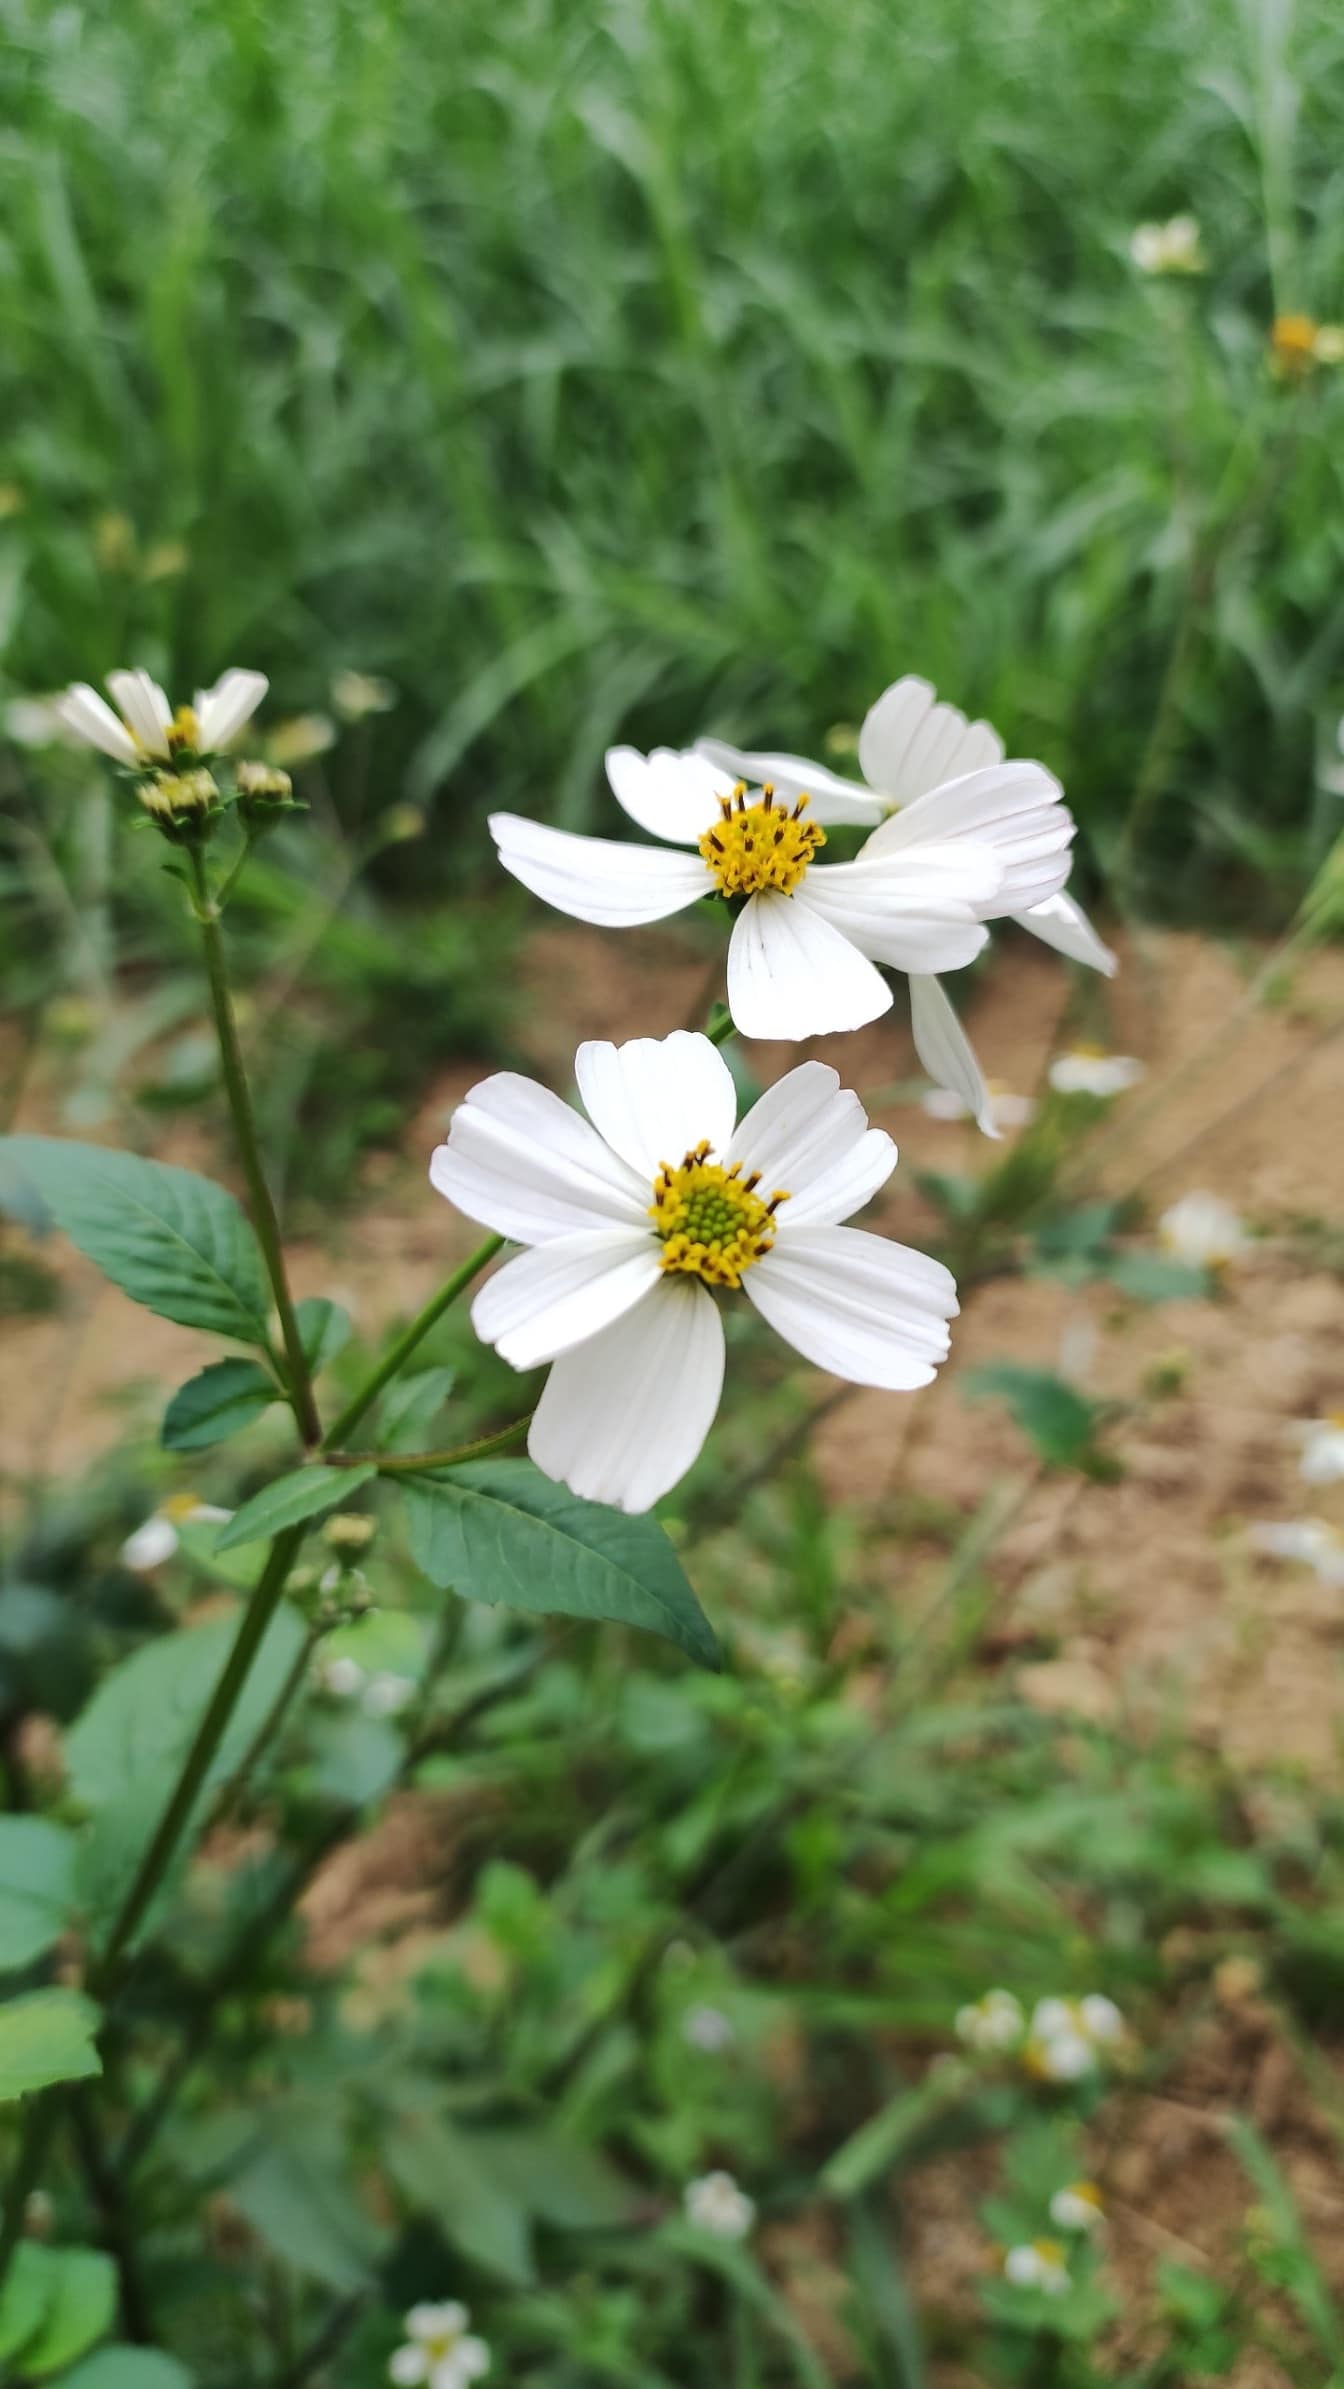 ดอกไม้สีขาว (Bidens alba) ดอกไม้ป่าในทุ่งหญ้าในฤดูใบไม้ผลิ